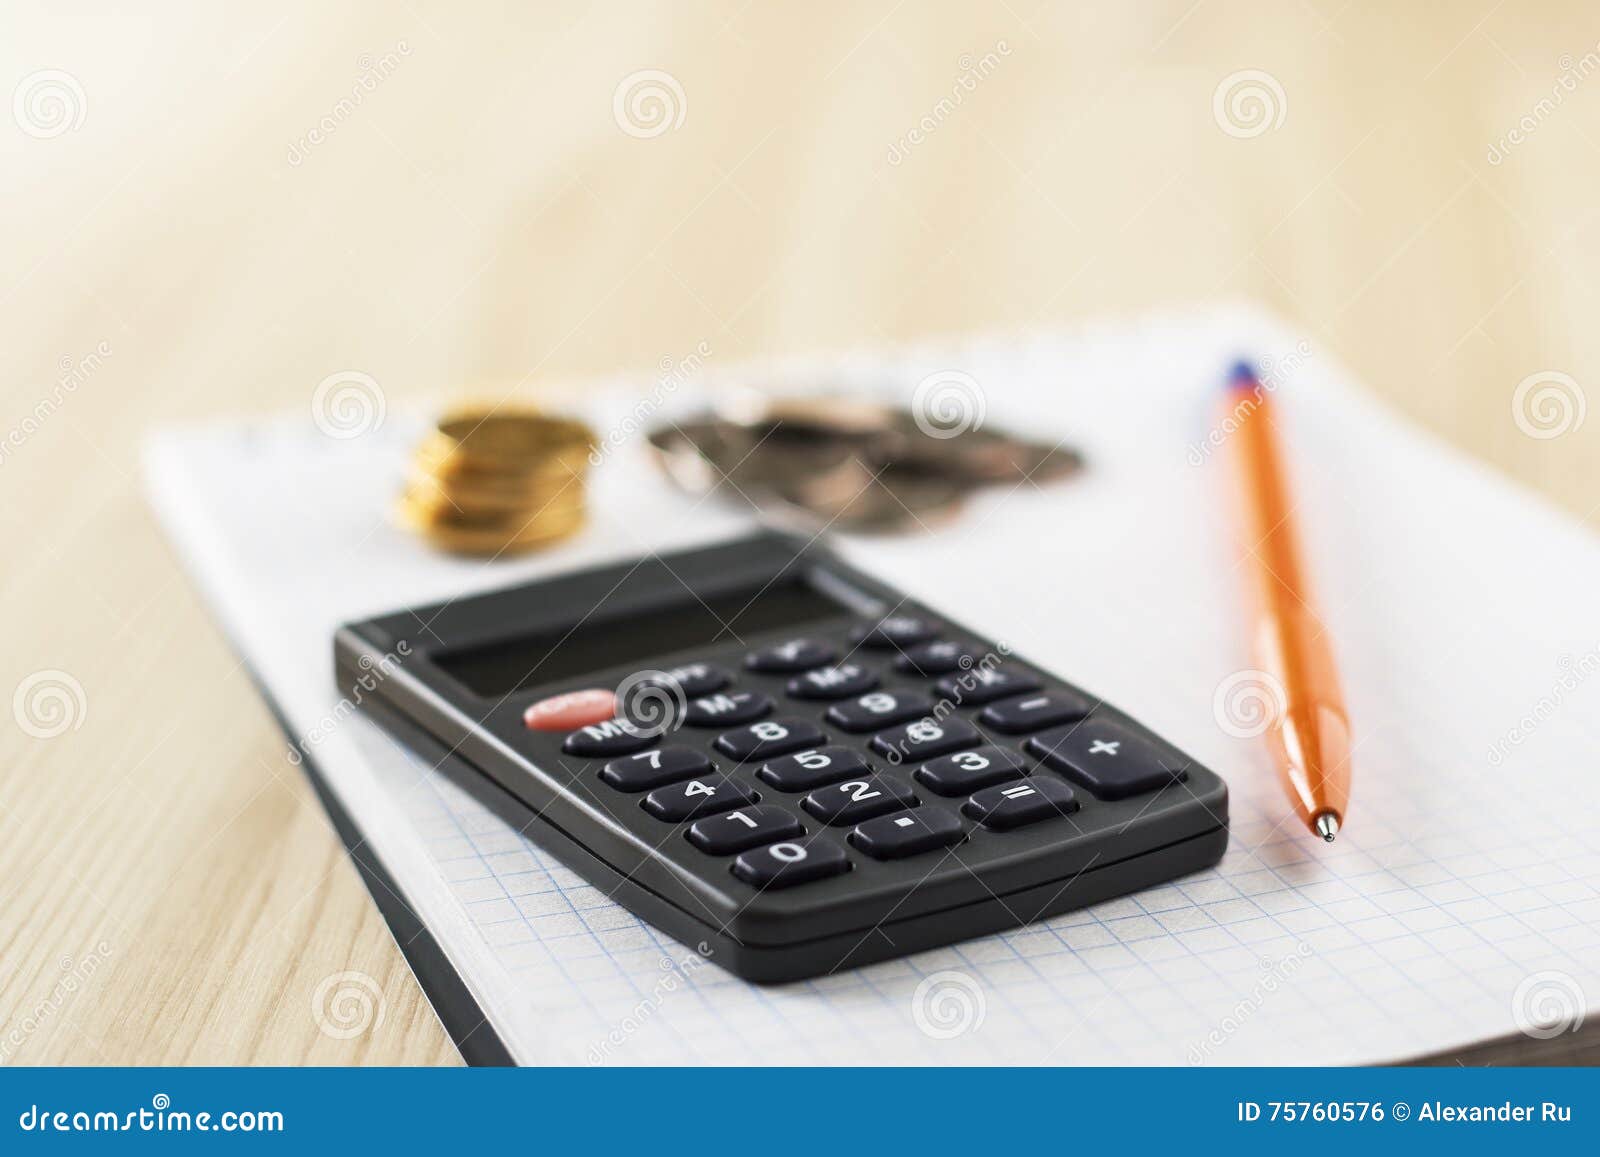 Calculator, pen, coins lie on notebook.